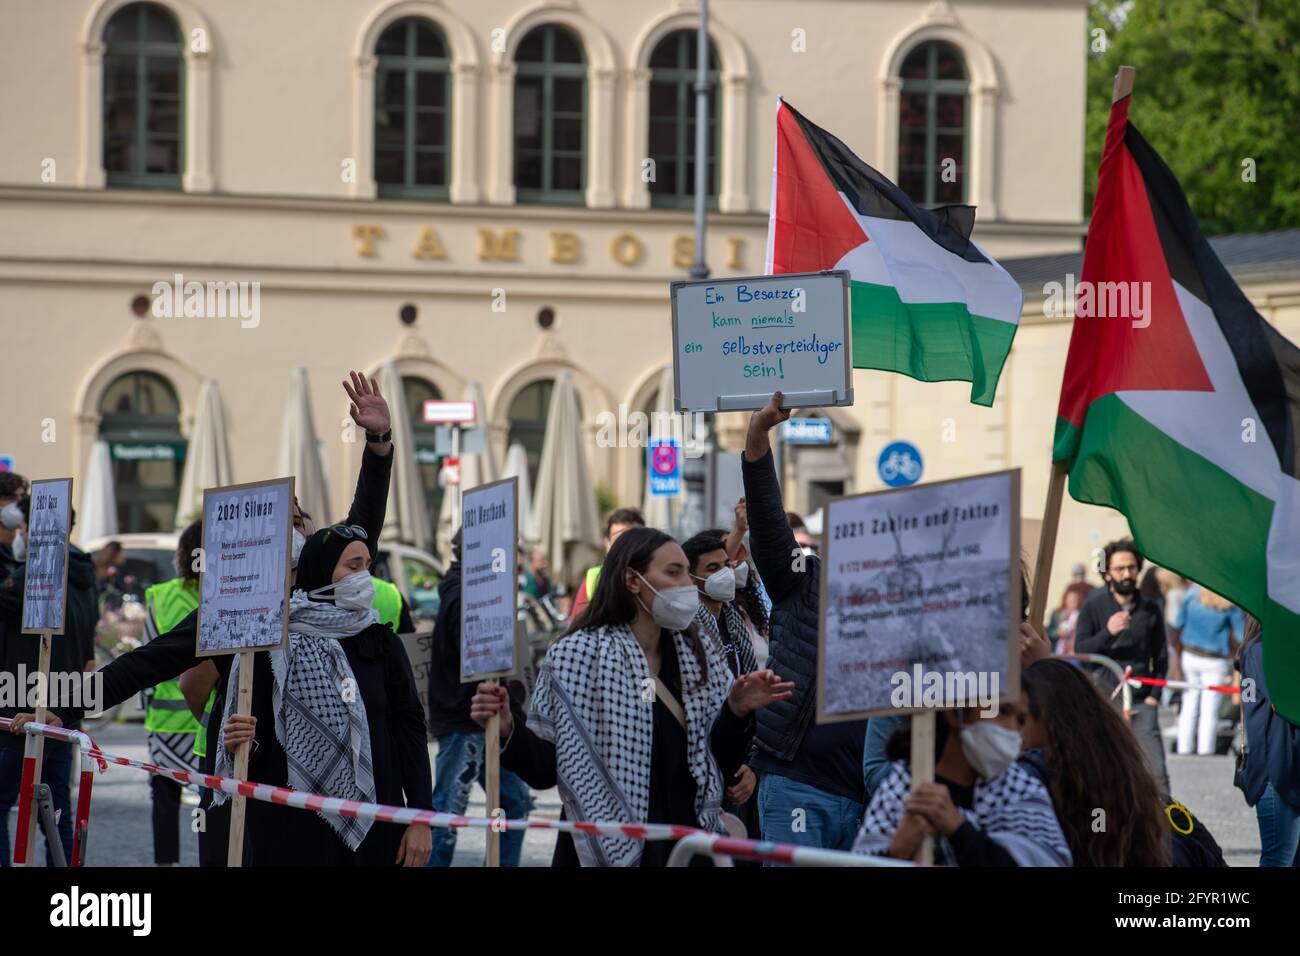 Ca. 200-300 Menschen sammeln sich am 29.5.2021 in München, um ihre Solidarität mit den Menschen in Gaza, Ost Jerusalem, den besetzten Gebieten und dem Westjordanland zu zeigen. - am 29. Mai 2021 versammelten sich rund 200-300 Menschen in München, um ihre Unterstützung für die Menschen in Gaza, Ostjerusalem, den besetzten Gebieten und der Westbank zu zeigen. (Foto: Alexander Pohl/Sipa USA) Quelle: SIPA USA/Alamy Live News Stockfoto